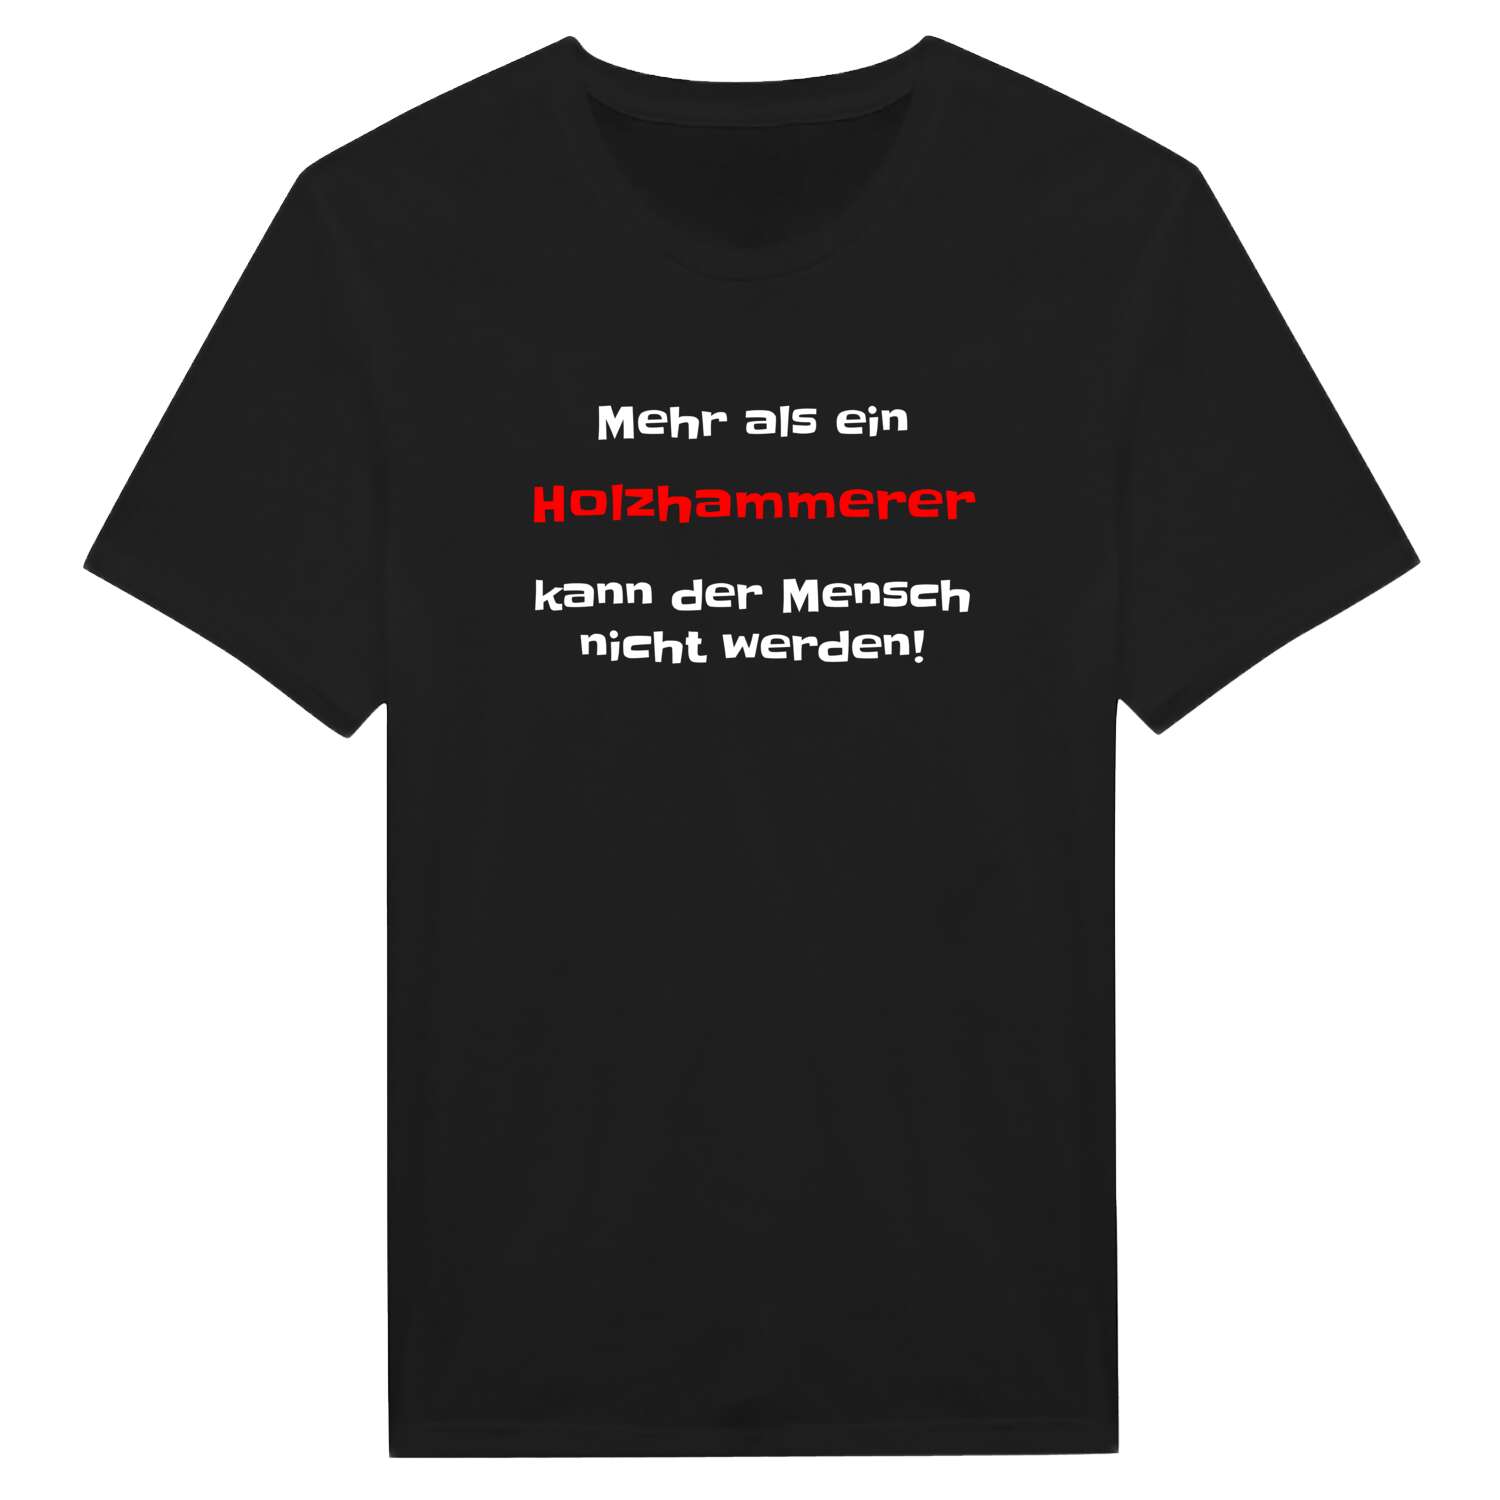 Holzhammer T-Shirt »Mehr als ein«